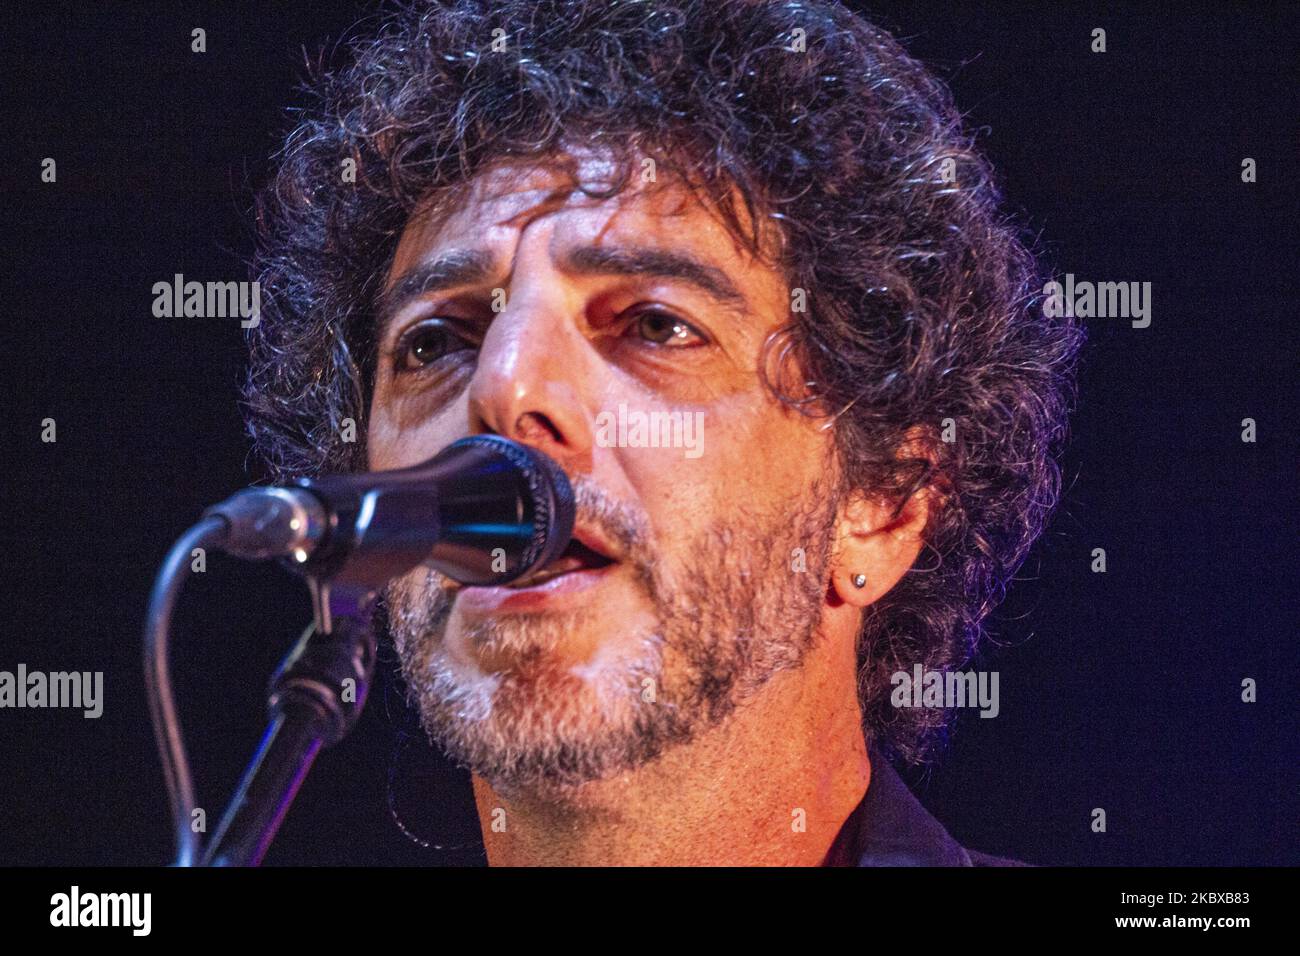 Il cantautore e musicista Max Gazze si è esibito il 19 agosto 2020 al Sountrack Festival di Ostuni (BR), in Italia, con il suo tour di scena in palco (Foto di Mimmo Lamacchia/NurPhoto) Foto Stock